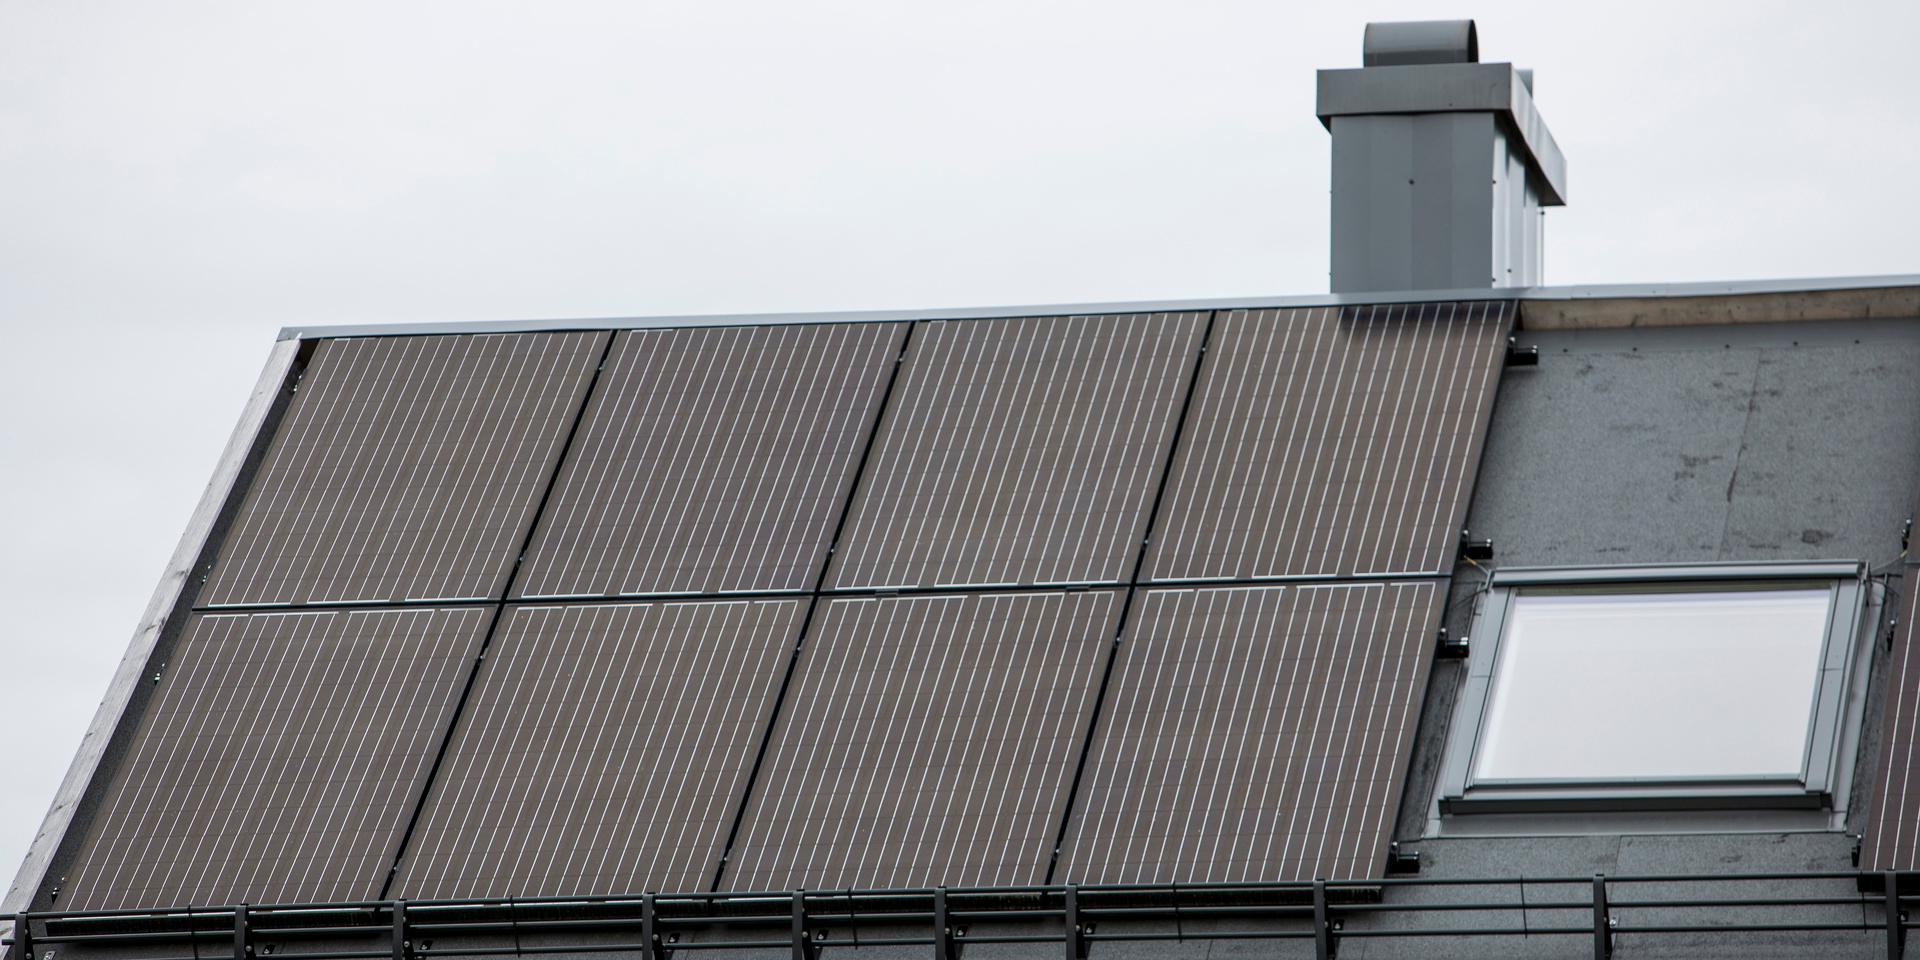 Varför ser inte Göteborg energi till att öka kapaciteten när det gäller alla som installerat solpaneler på sina hus? undrar Susanne Johansson.